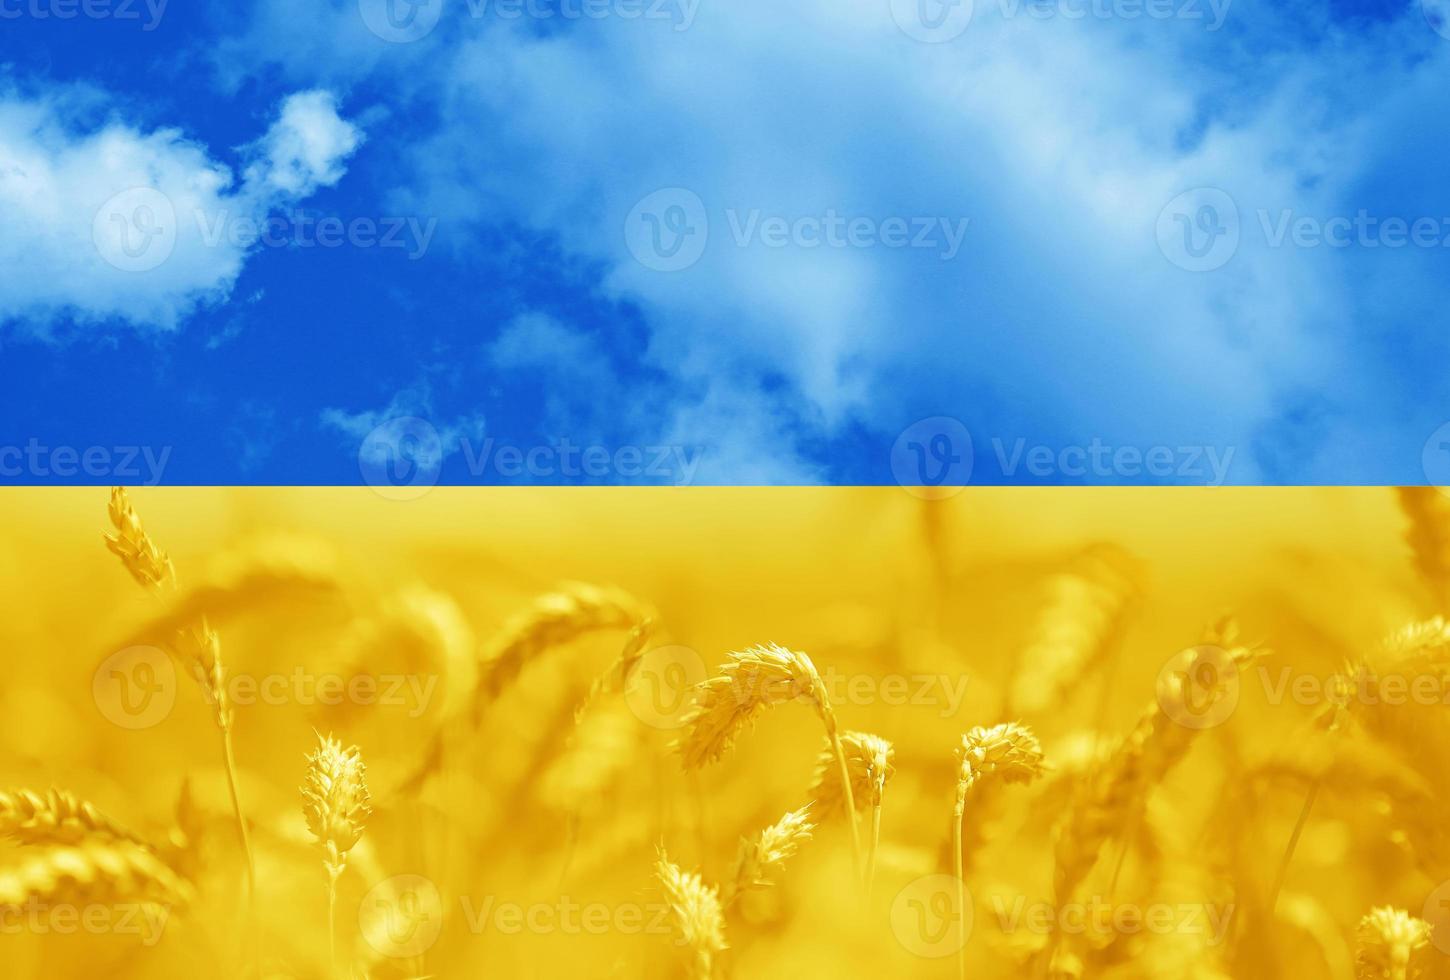 afgezwakt foto van een oren tarwe veld- onder lucht in de nationaal kleuren van de vlag van Oekraïne - blauw en geel. symbool van vrijheid oekraïens mensen. solidariteit met Oekraïne